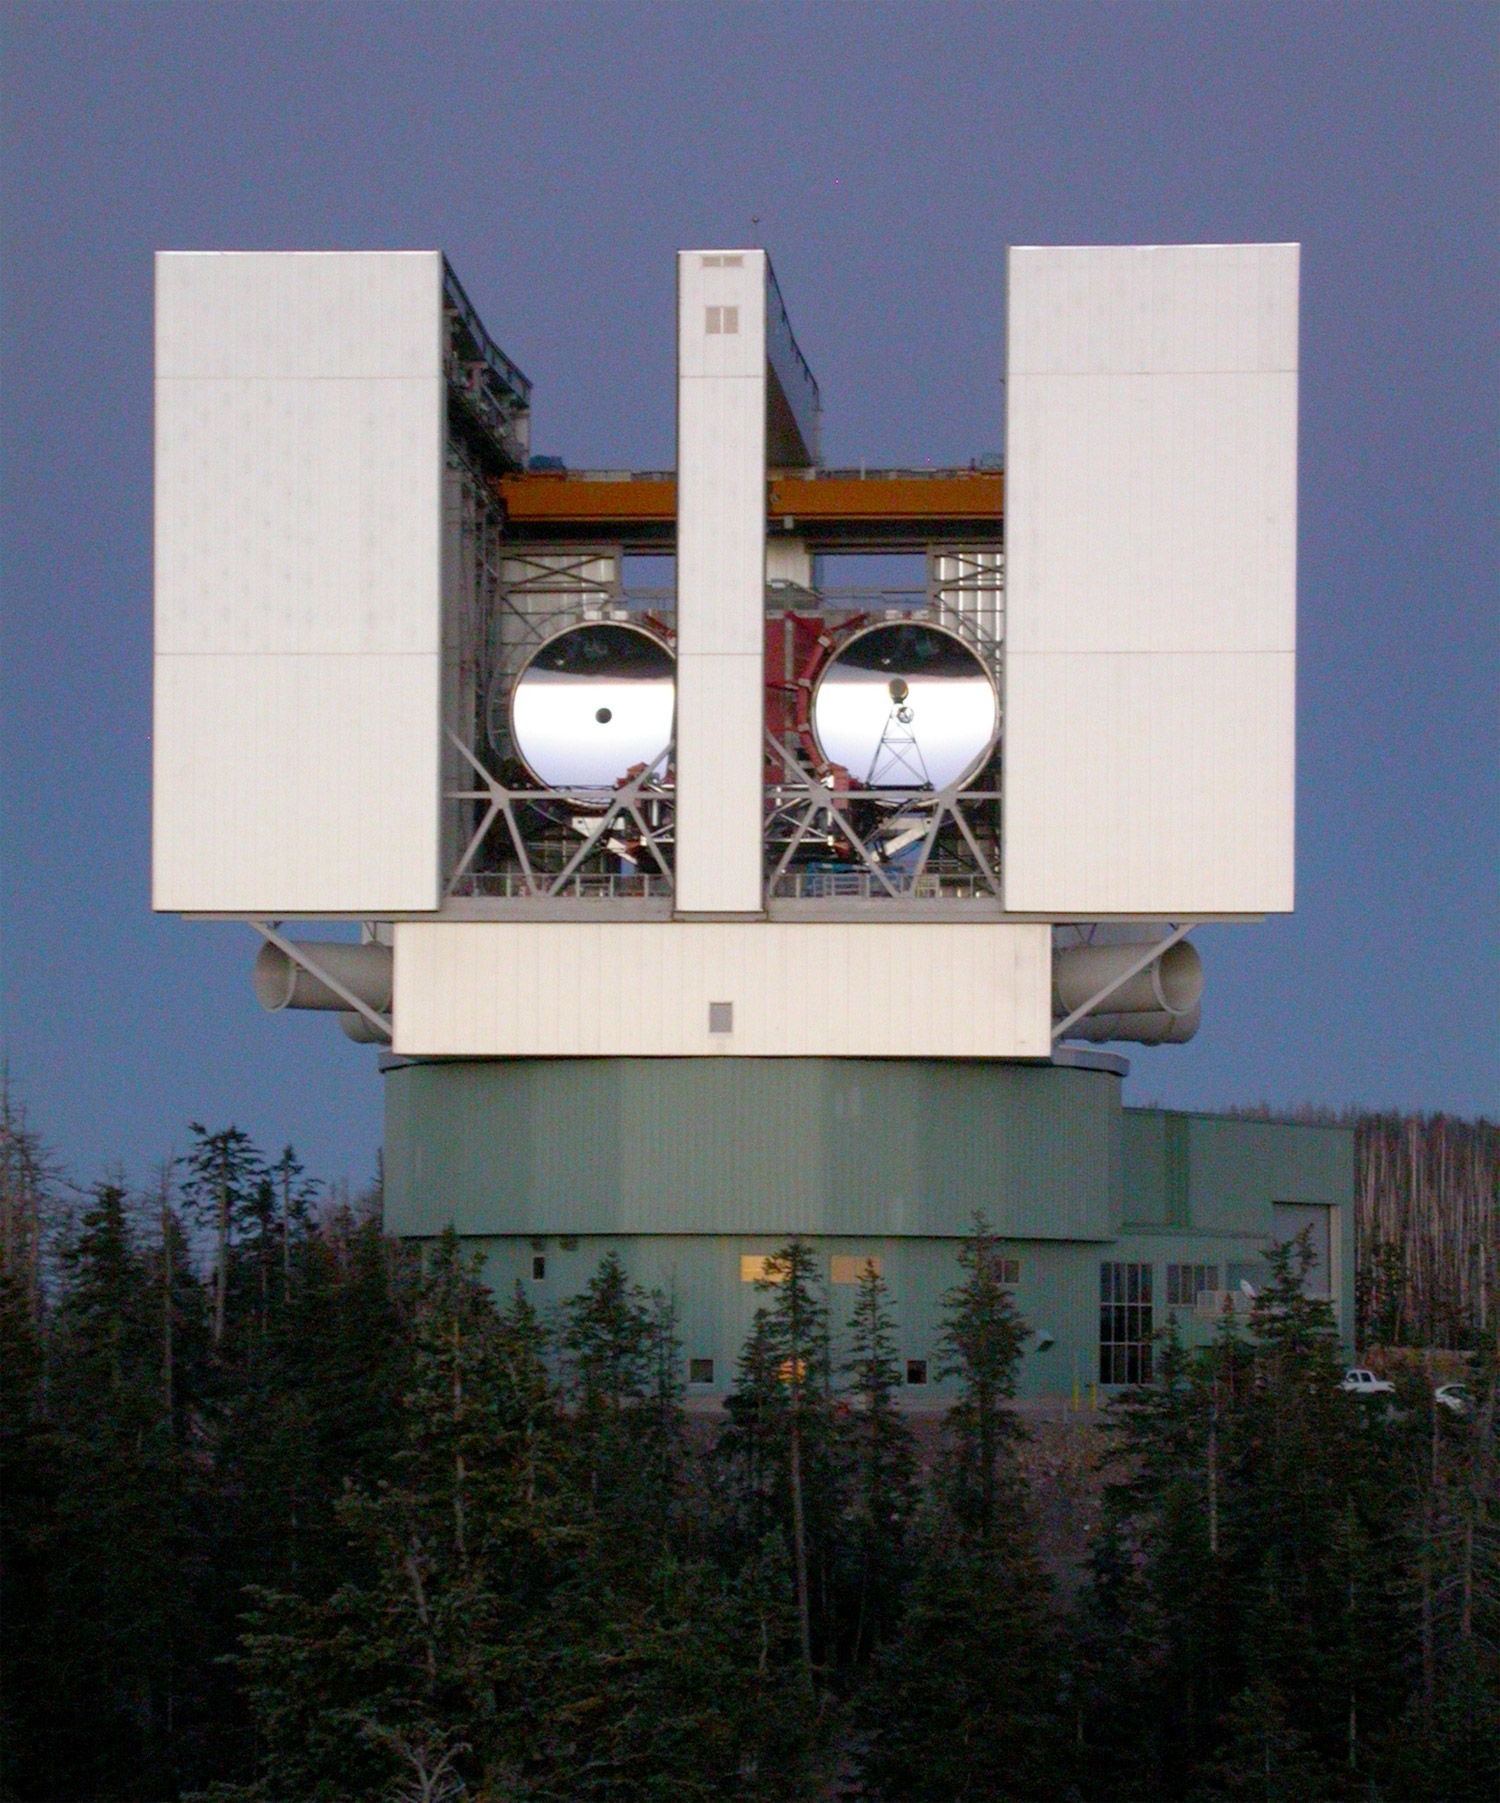 Les deux miroirs de 8,4 mètres donnent aujourd'hui au LBT les performances d'un télescope de près de 12 mètres de diamètre. Lorsqu'il fonctionnera en mode interférométrie, sa résolution atteindra celle d'un télescope de 22,8 m. Il fournira alors des images dix fois plus fines que celles réalisées par le télescope spatial Hubble. © Large Binocular Telescope Corporation